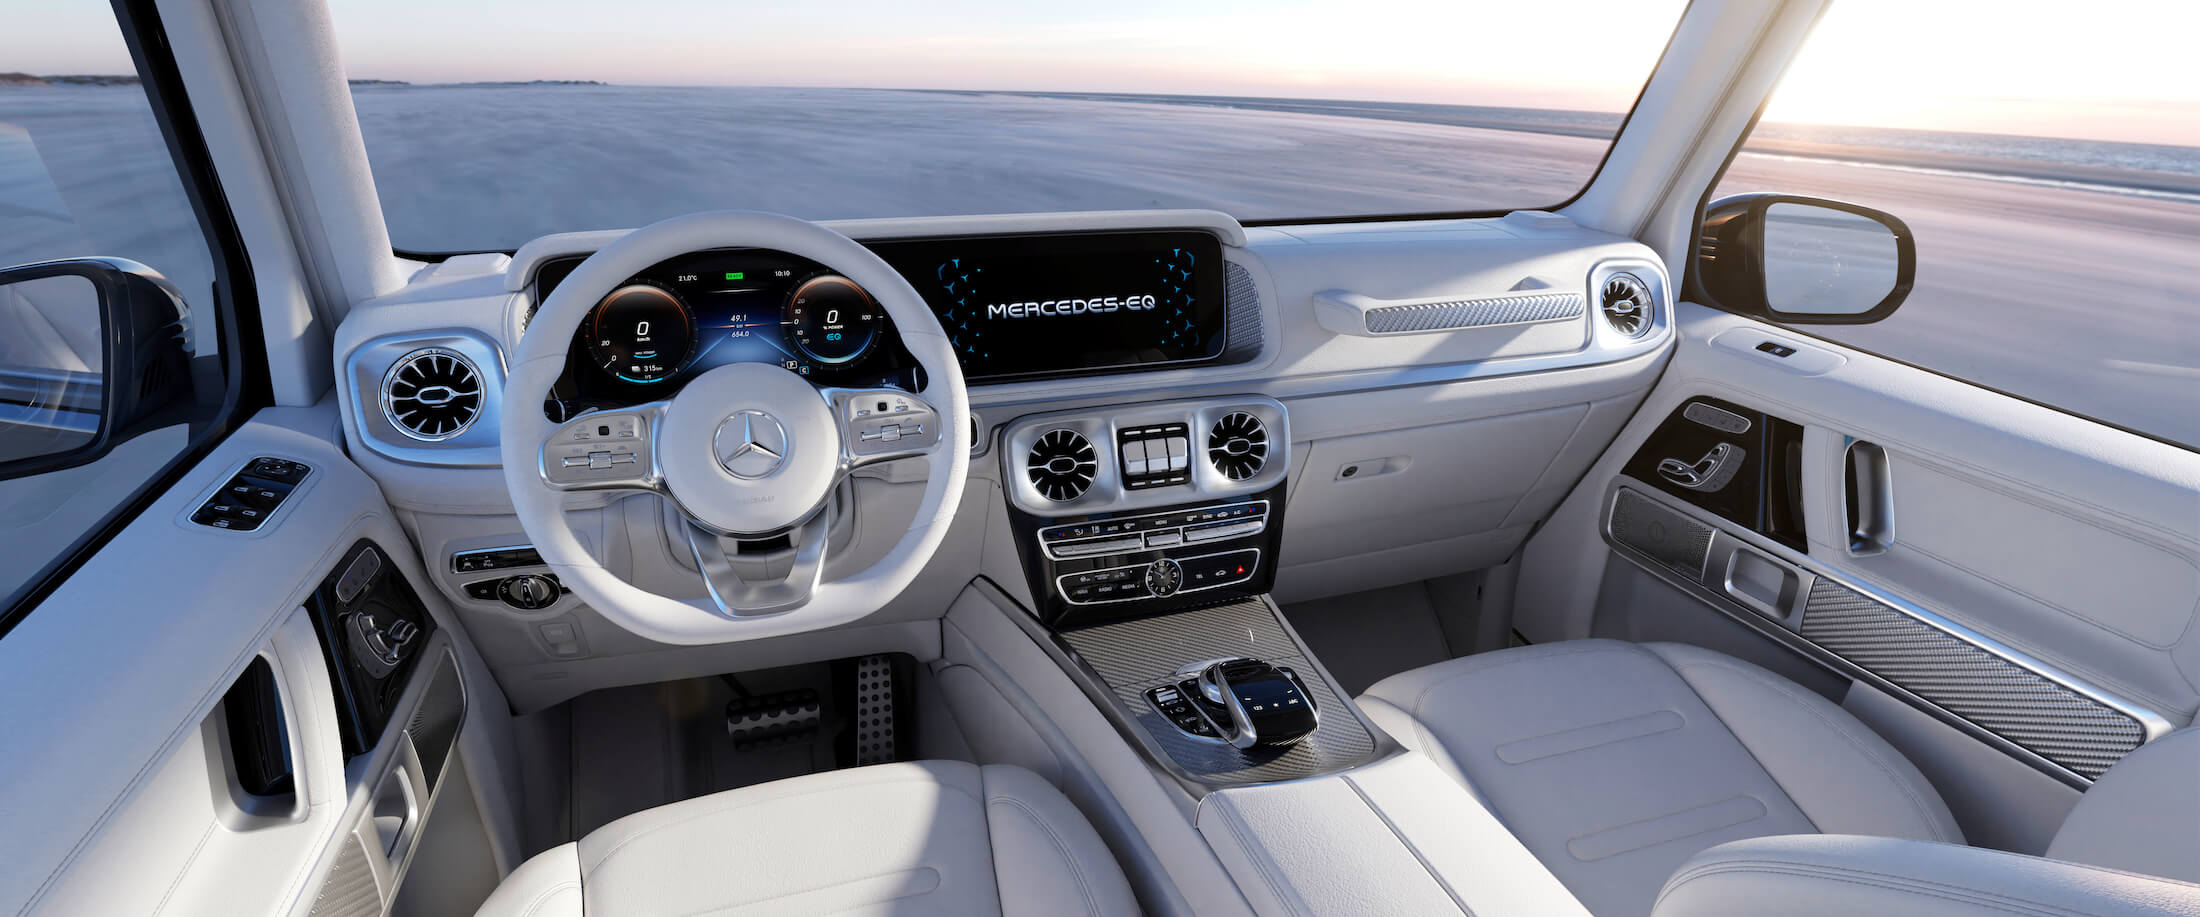 Mercedes-Benz EQG concept interior